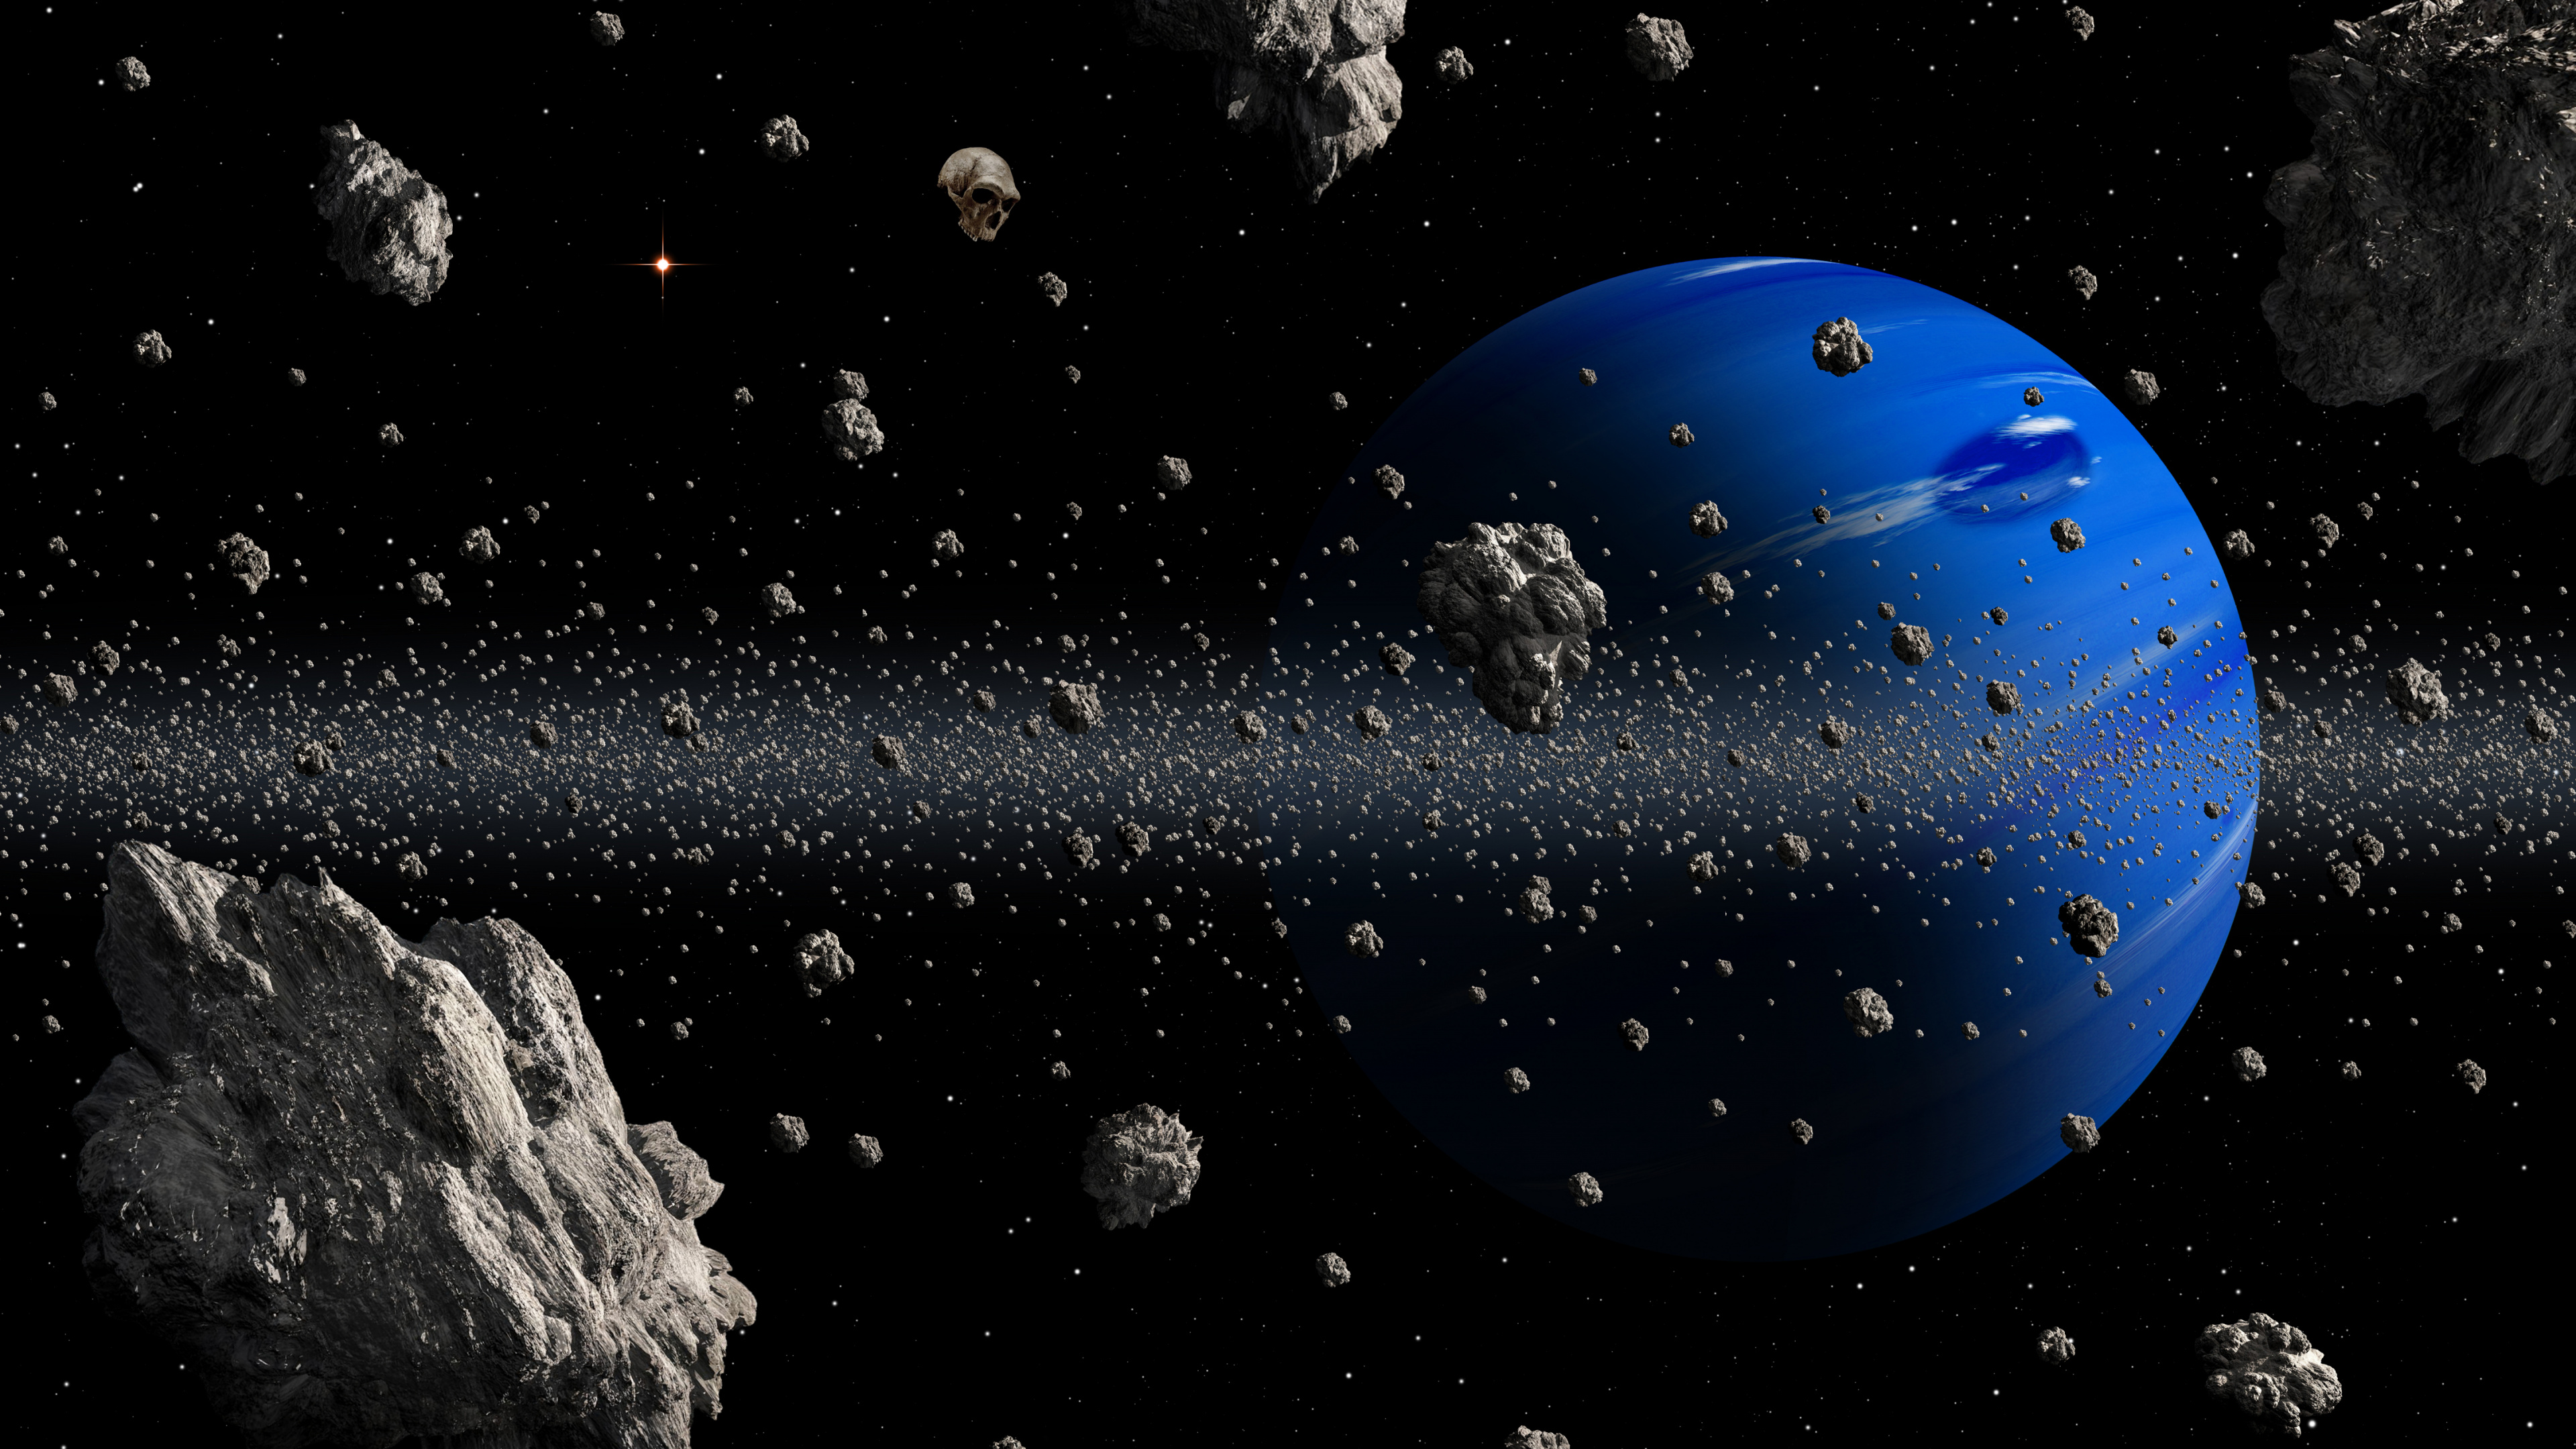 小行星, 这个星球, 空间, 外层空间, 天文学对象 壁纸 3840x2160 允许